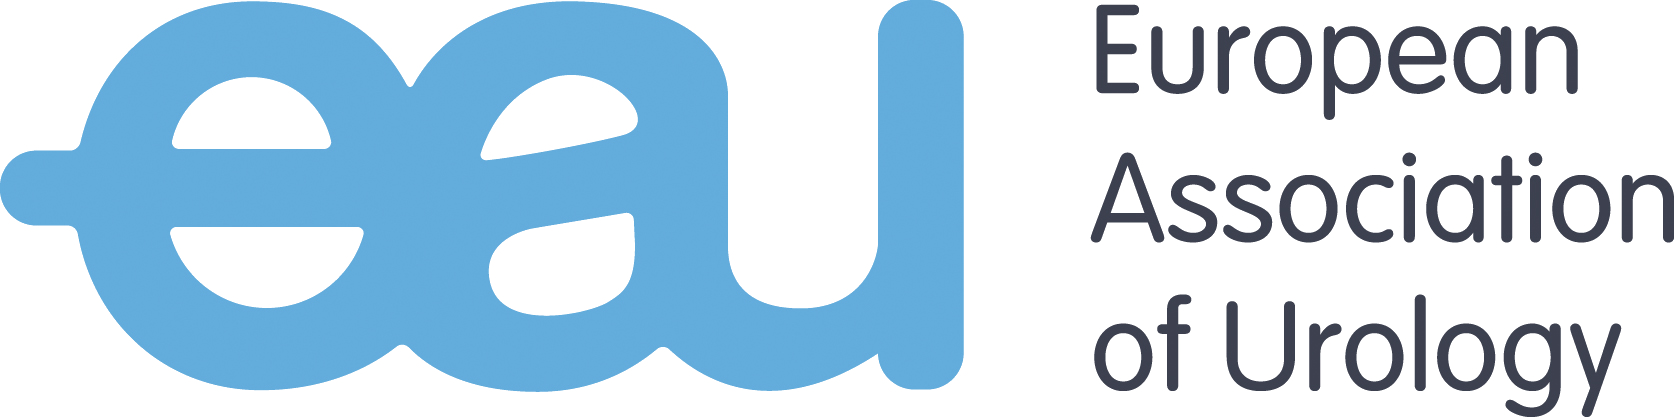 logo_eau